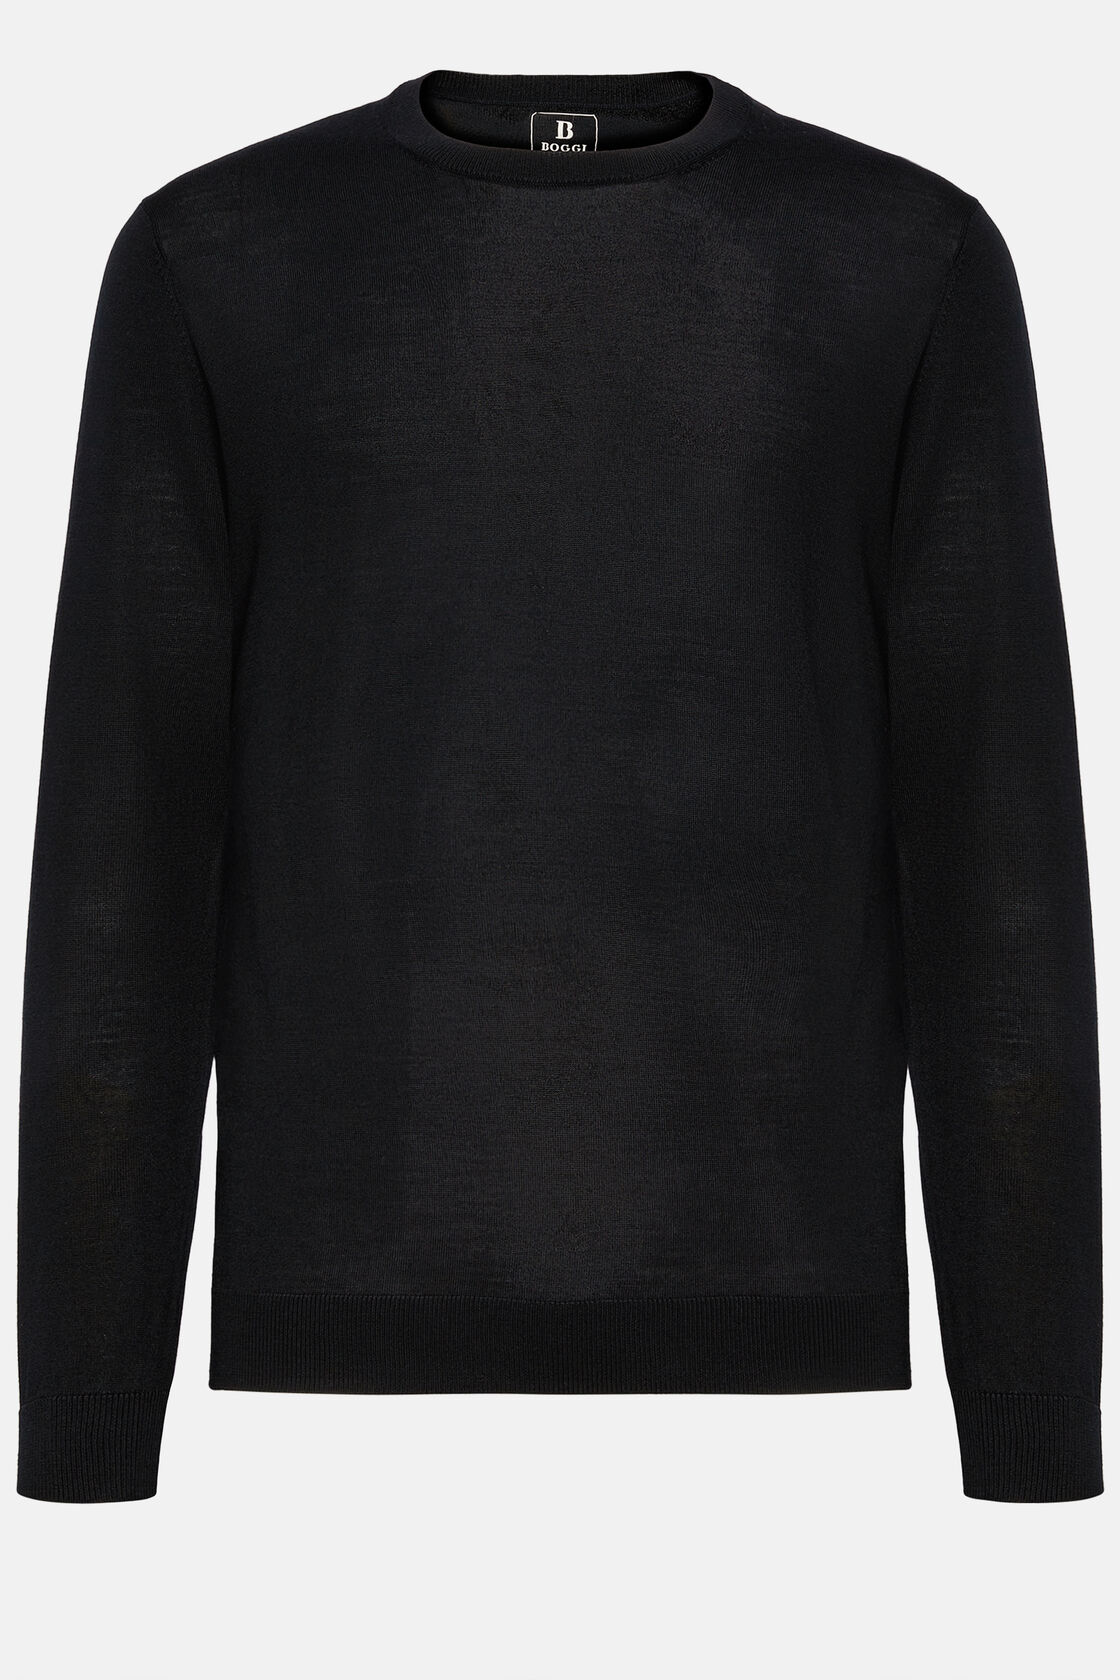 Czarny sweter z okrągłym dekoltem z niezwykle delikatnej wełny merynosów., Black, hi-res